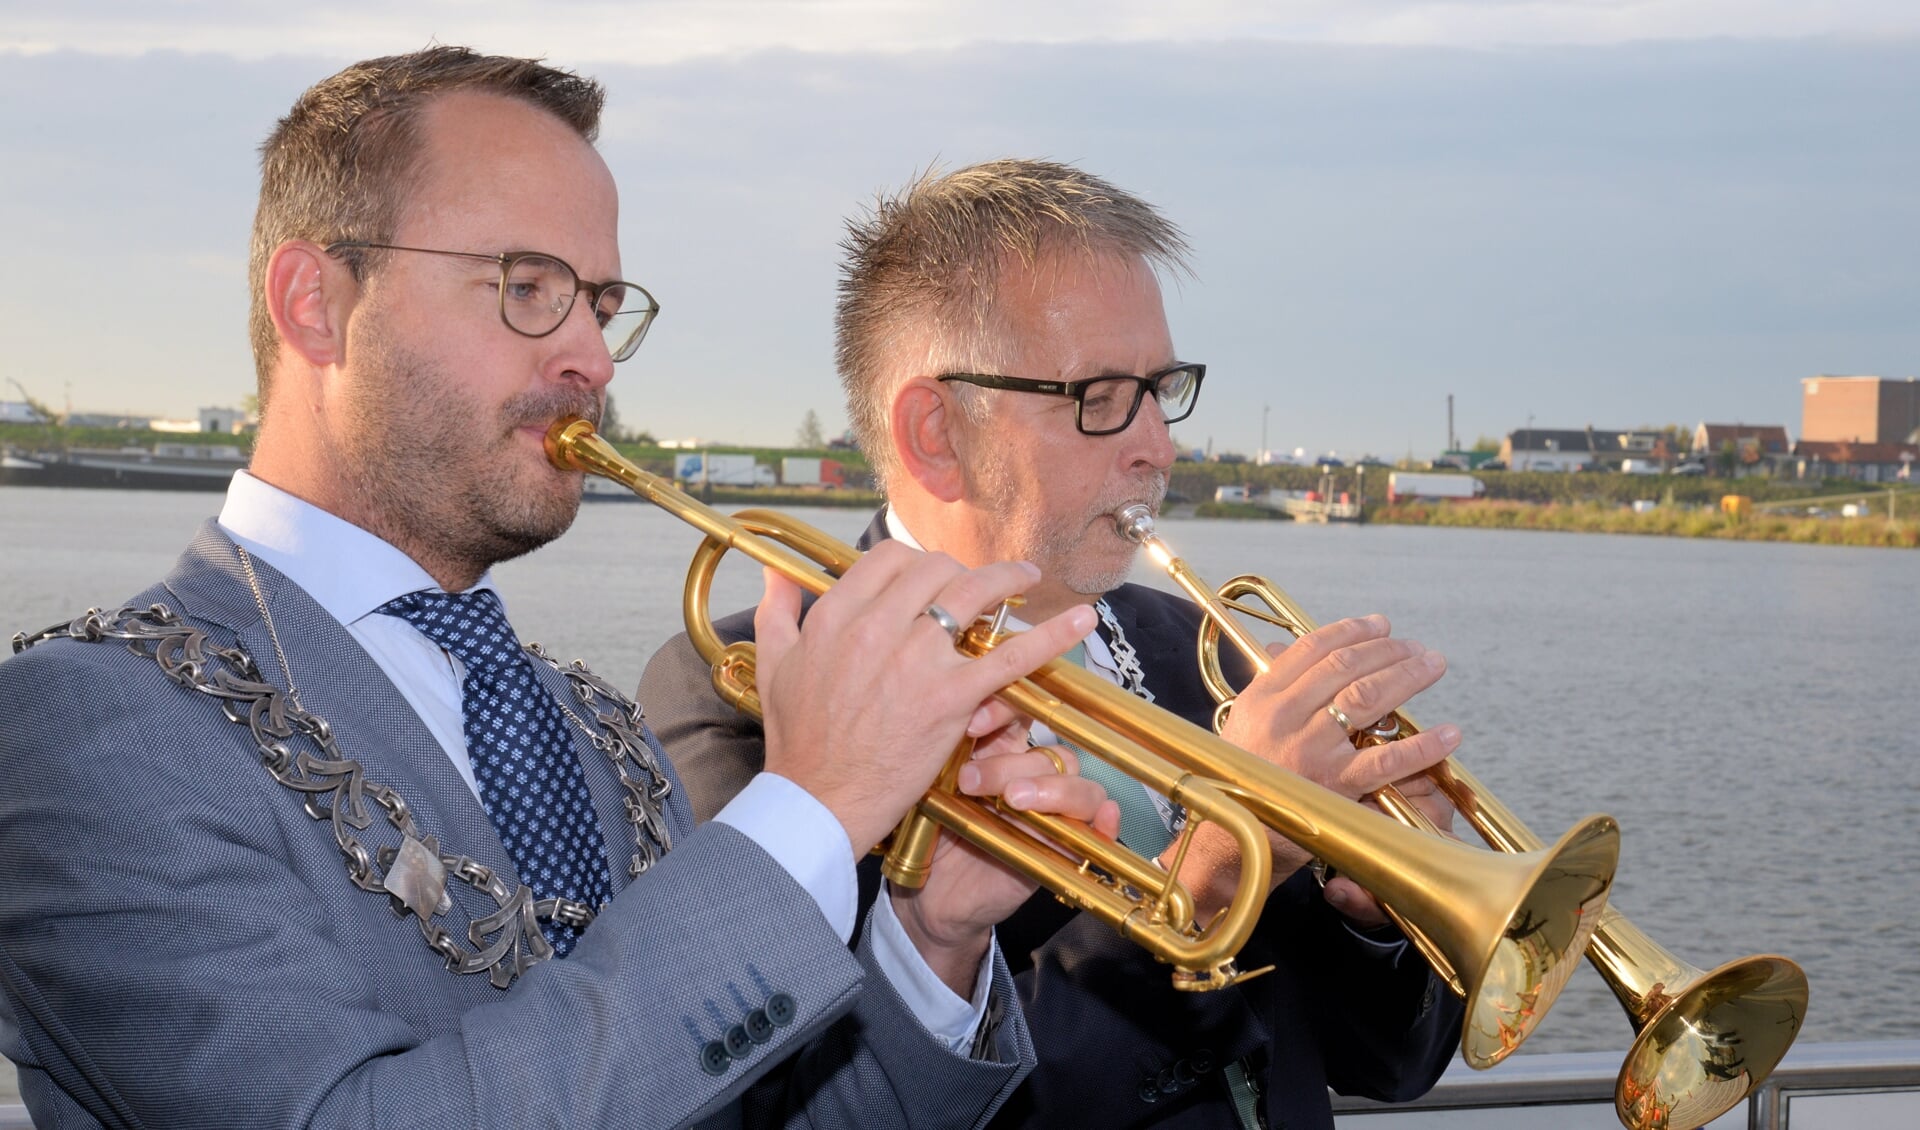 • Burgemeester Laurens de Graaf van Lopik (links) en de Zederikse locoburgemeester Maks van Middelkoop maken samen muziek op de Lek.